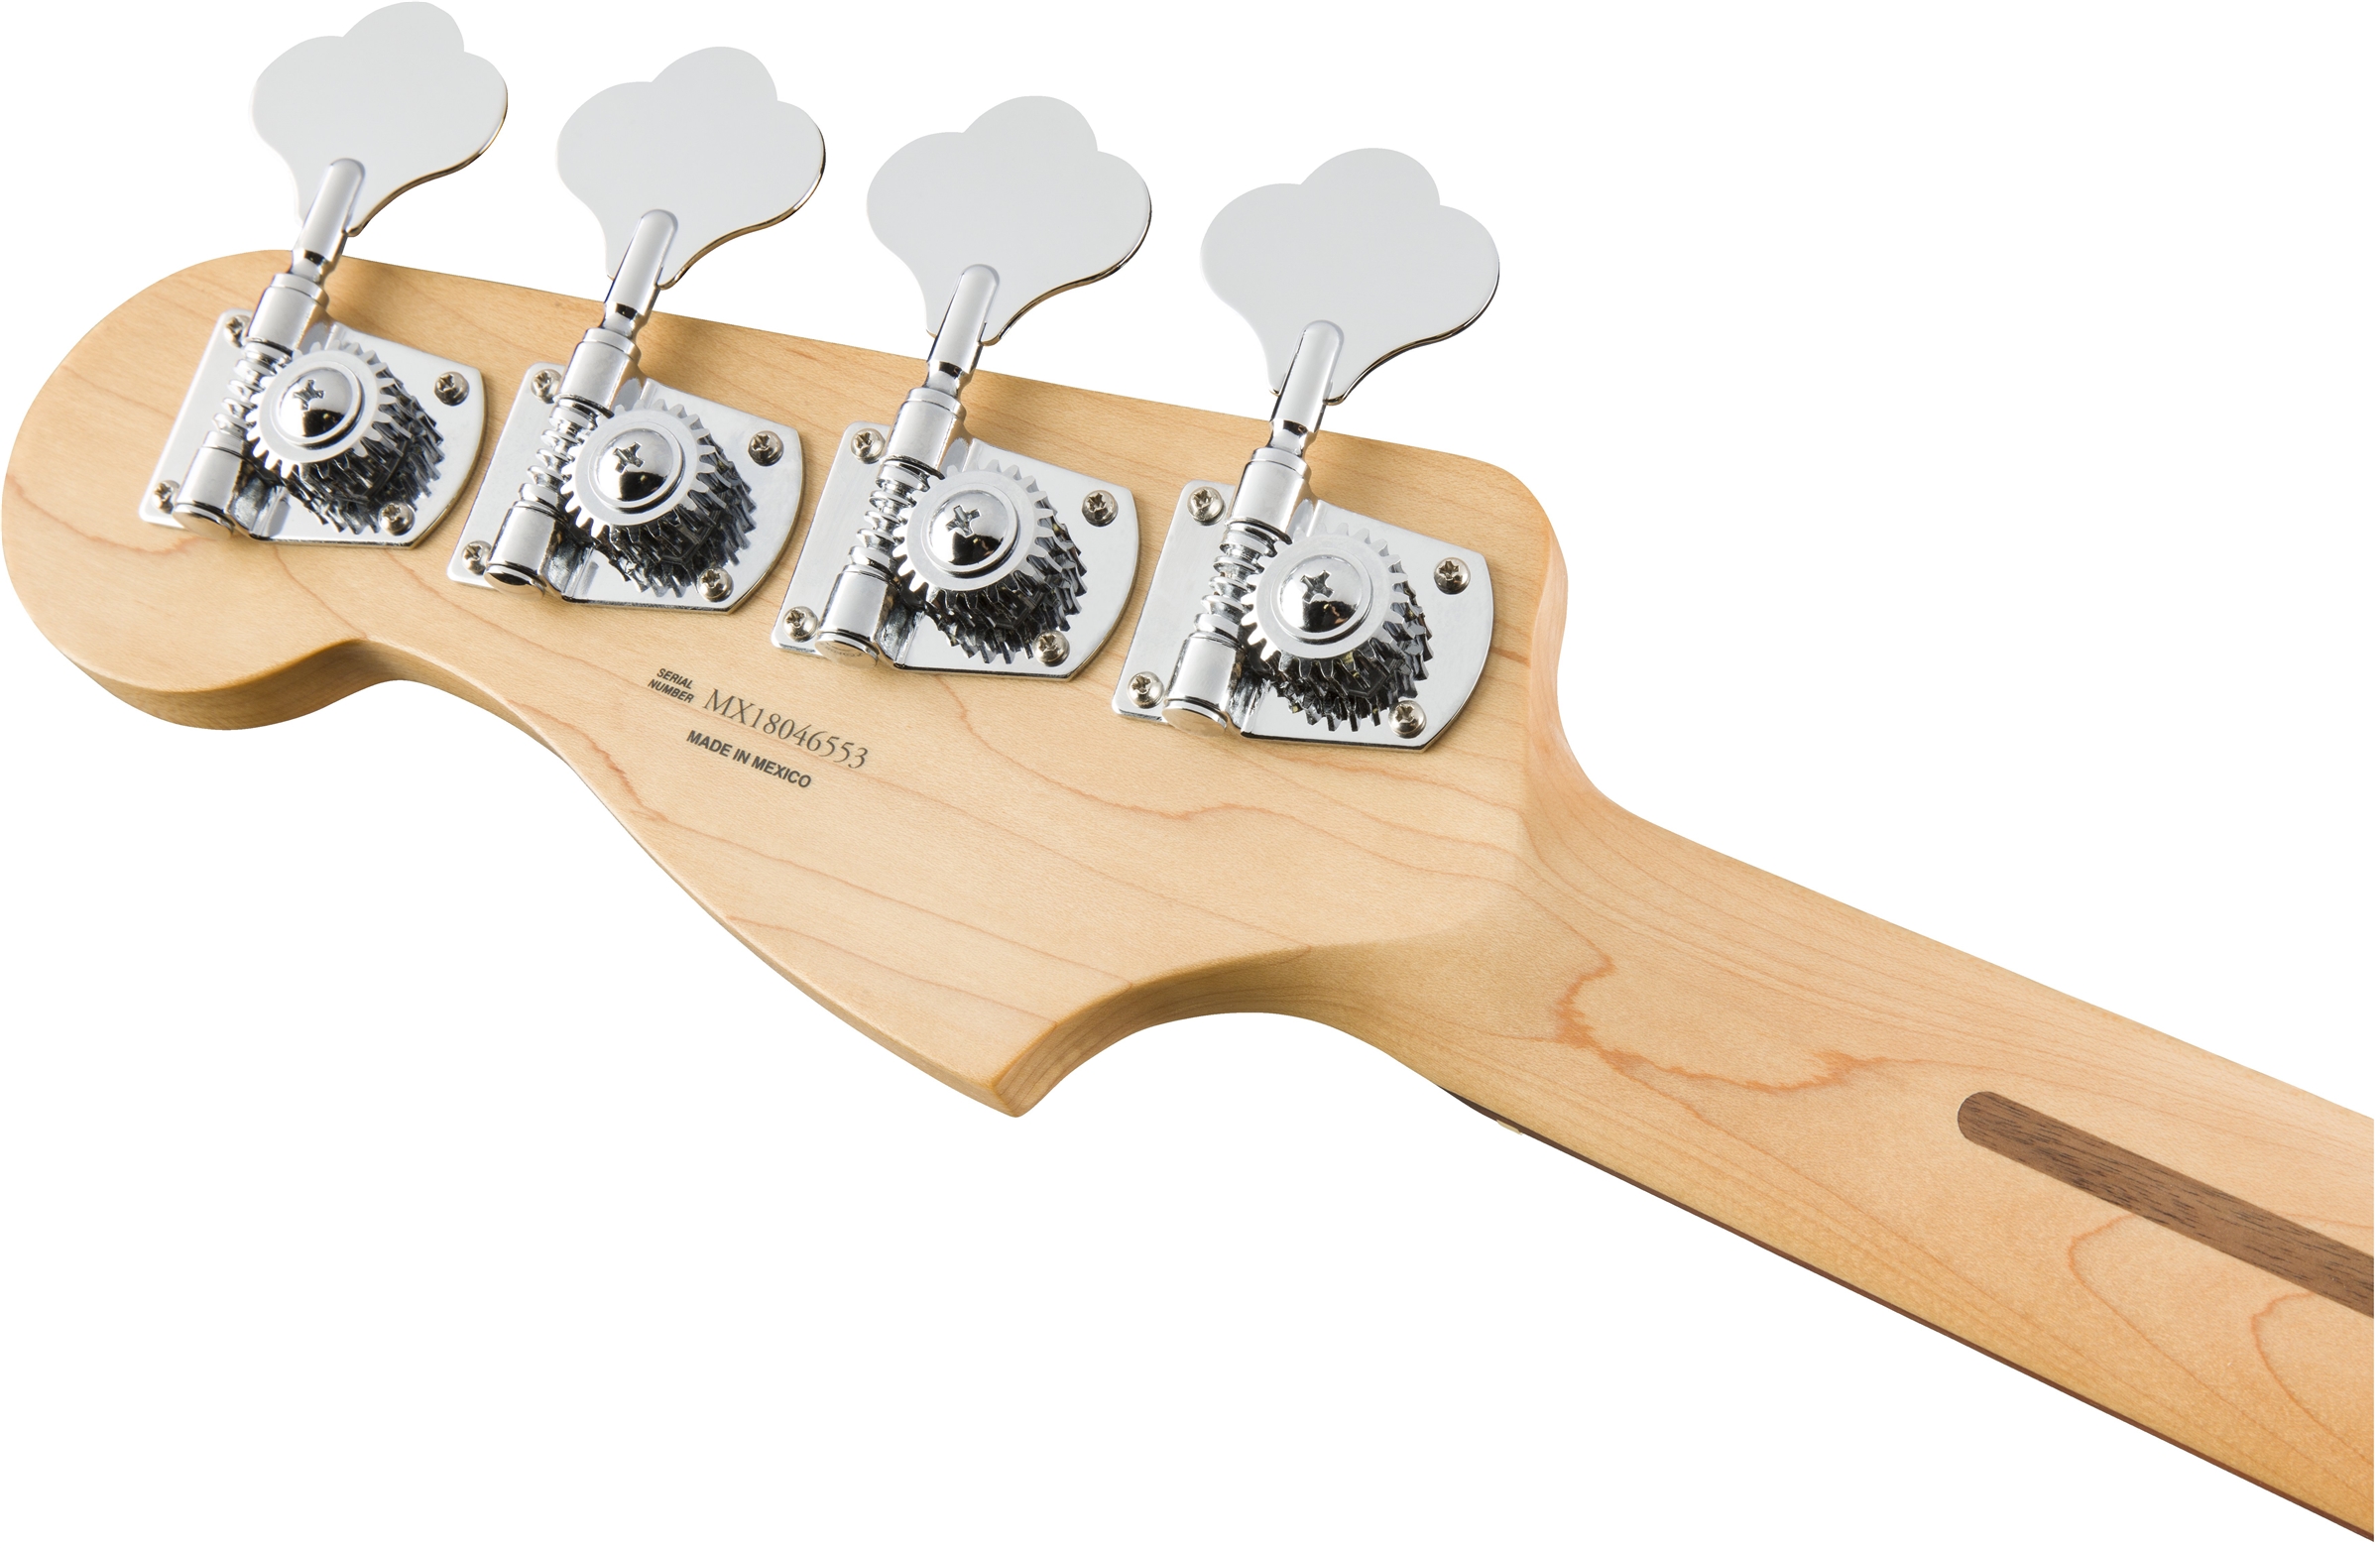 Fender Precision Bass Player Mex Pf - 3-color Sunburst - Solidbody E-bass - Variation 3